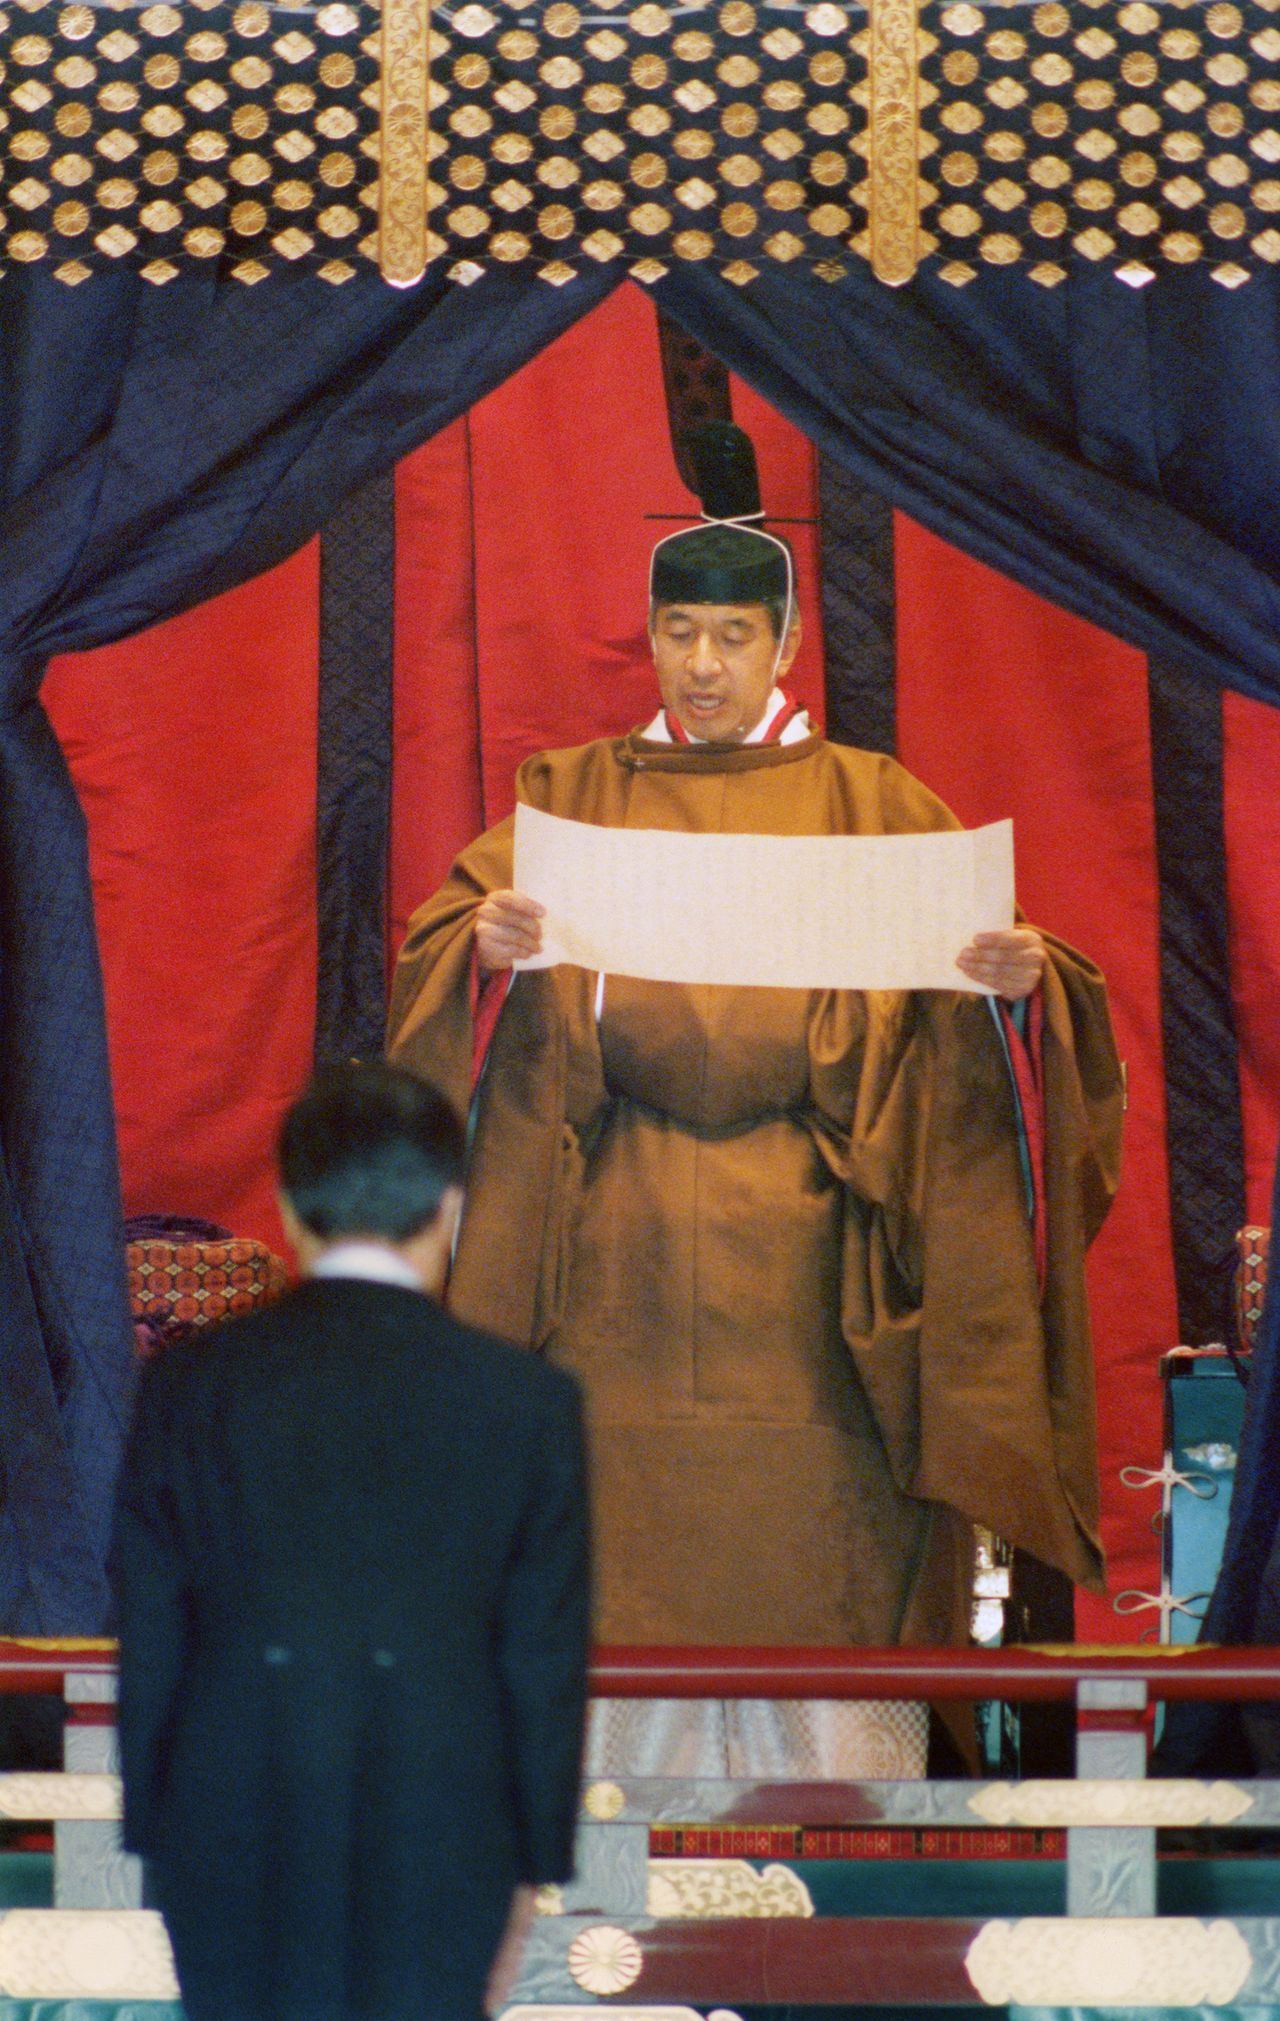 L’empereur Akihito prononce son discours d’intronisation, dans la Salle des Pins du palais impérial. (12/11/1990. Photo : Jiji)